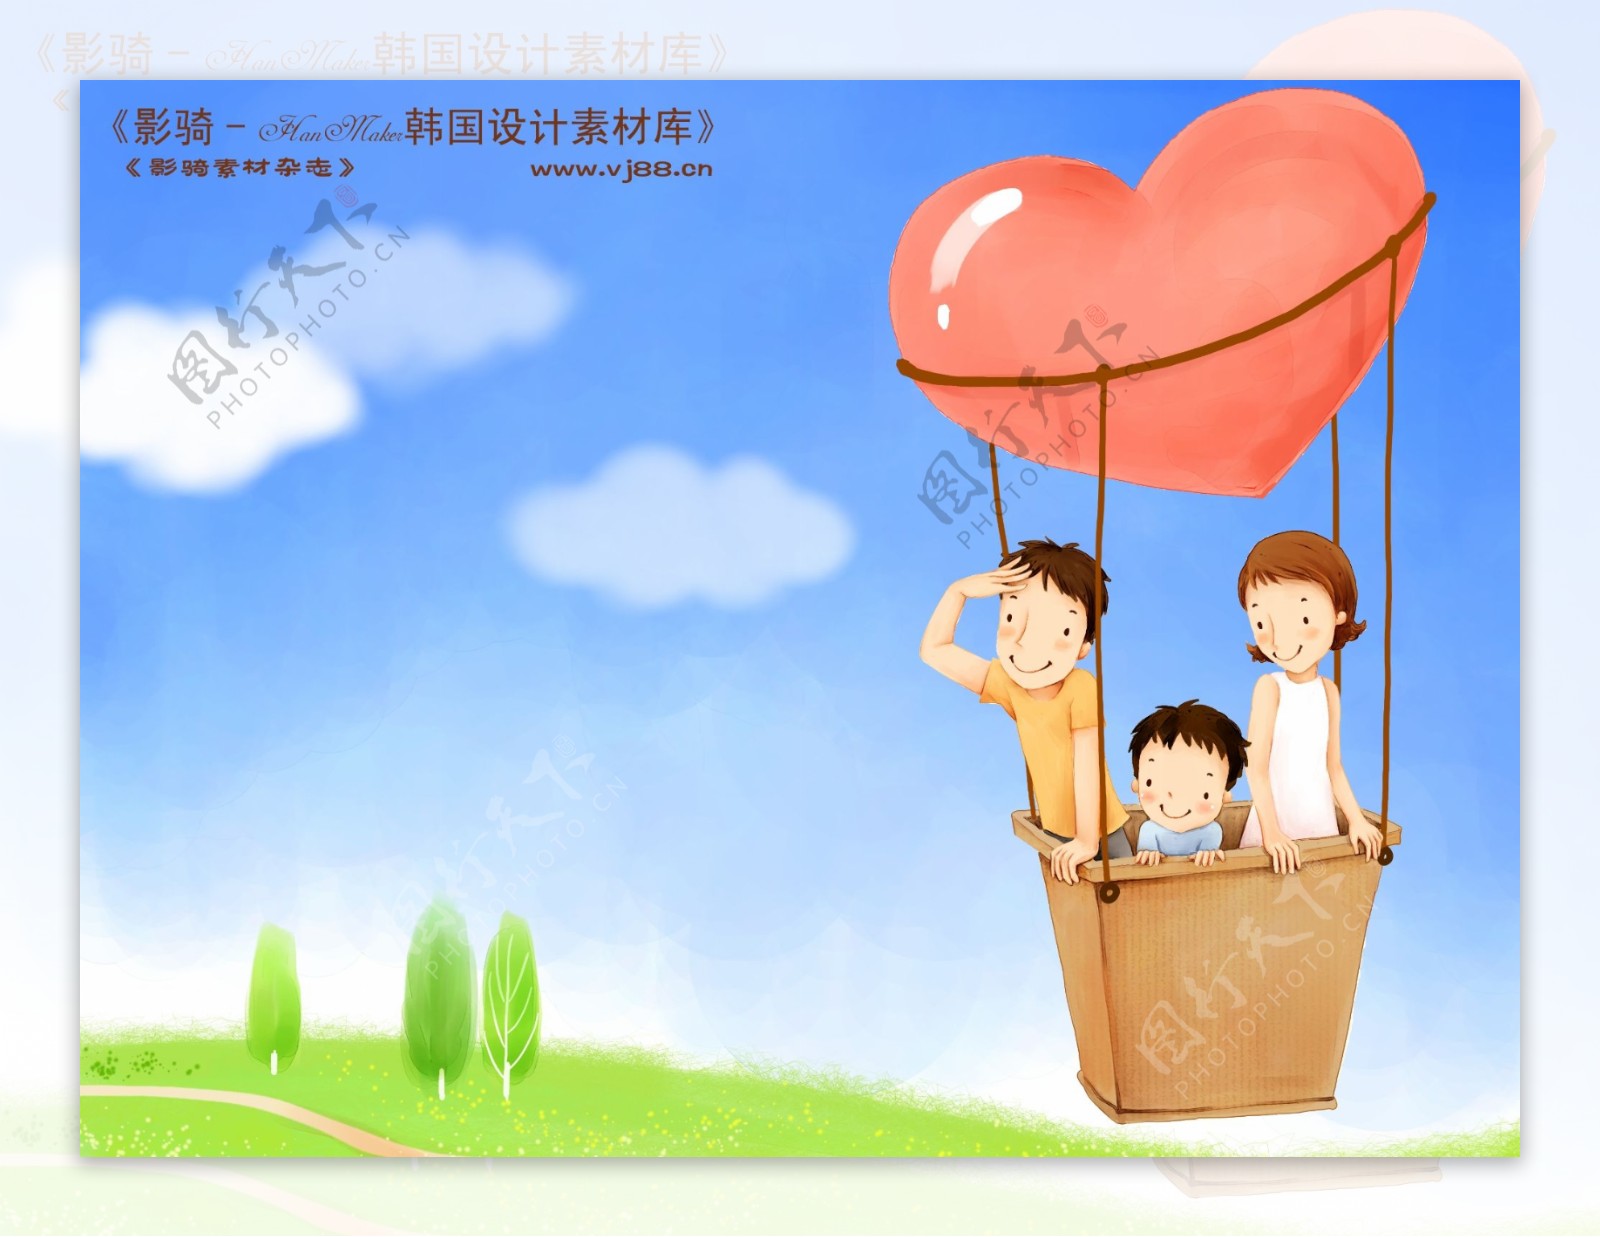 HanMaker韩国设计素材库卡通漫画全家幸福家庭生活父母孩子可爱